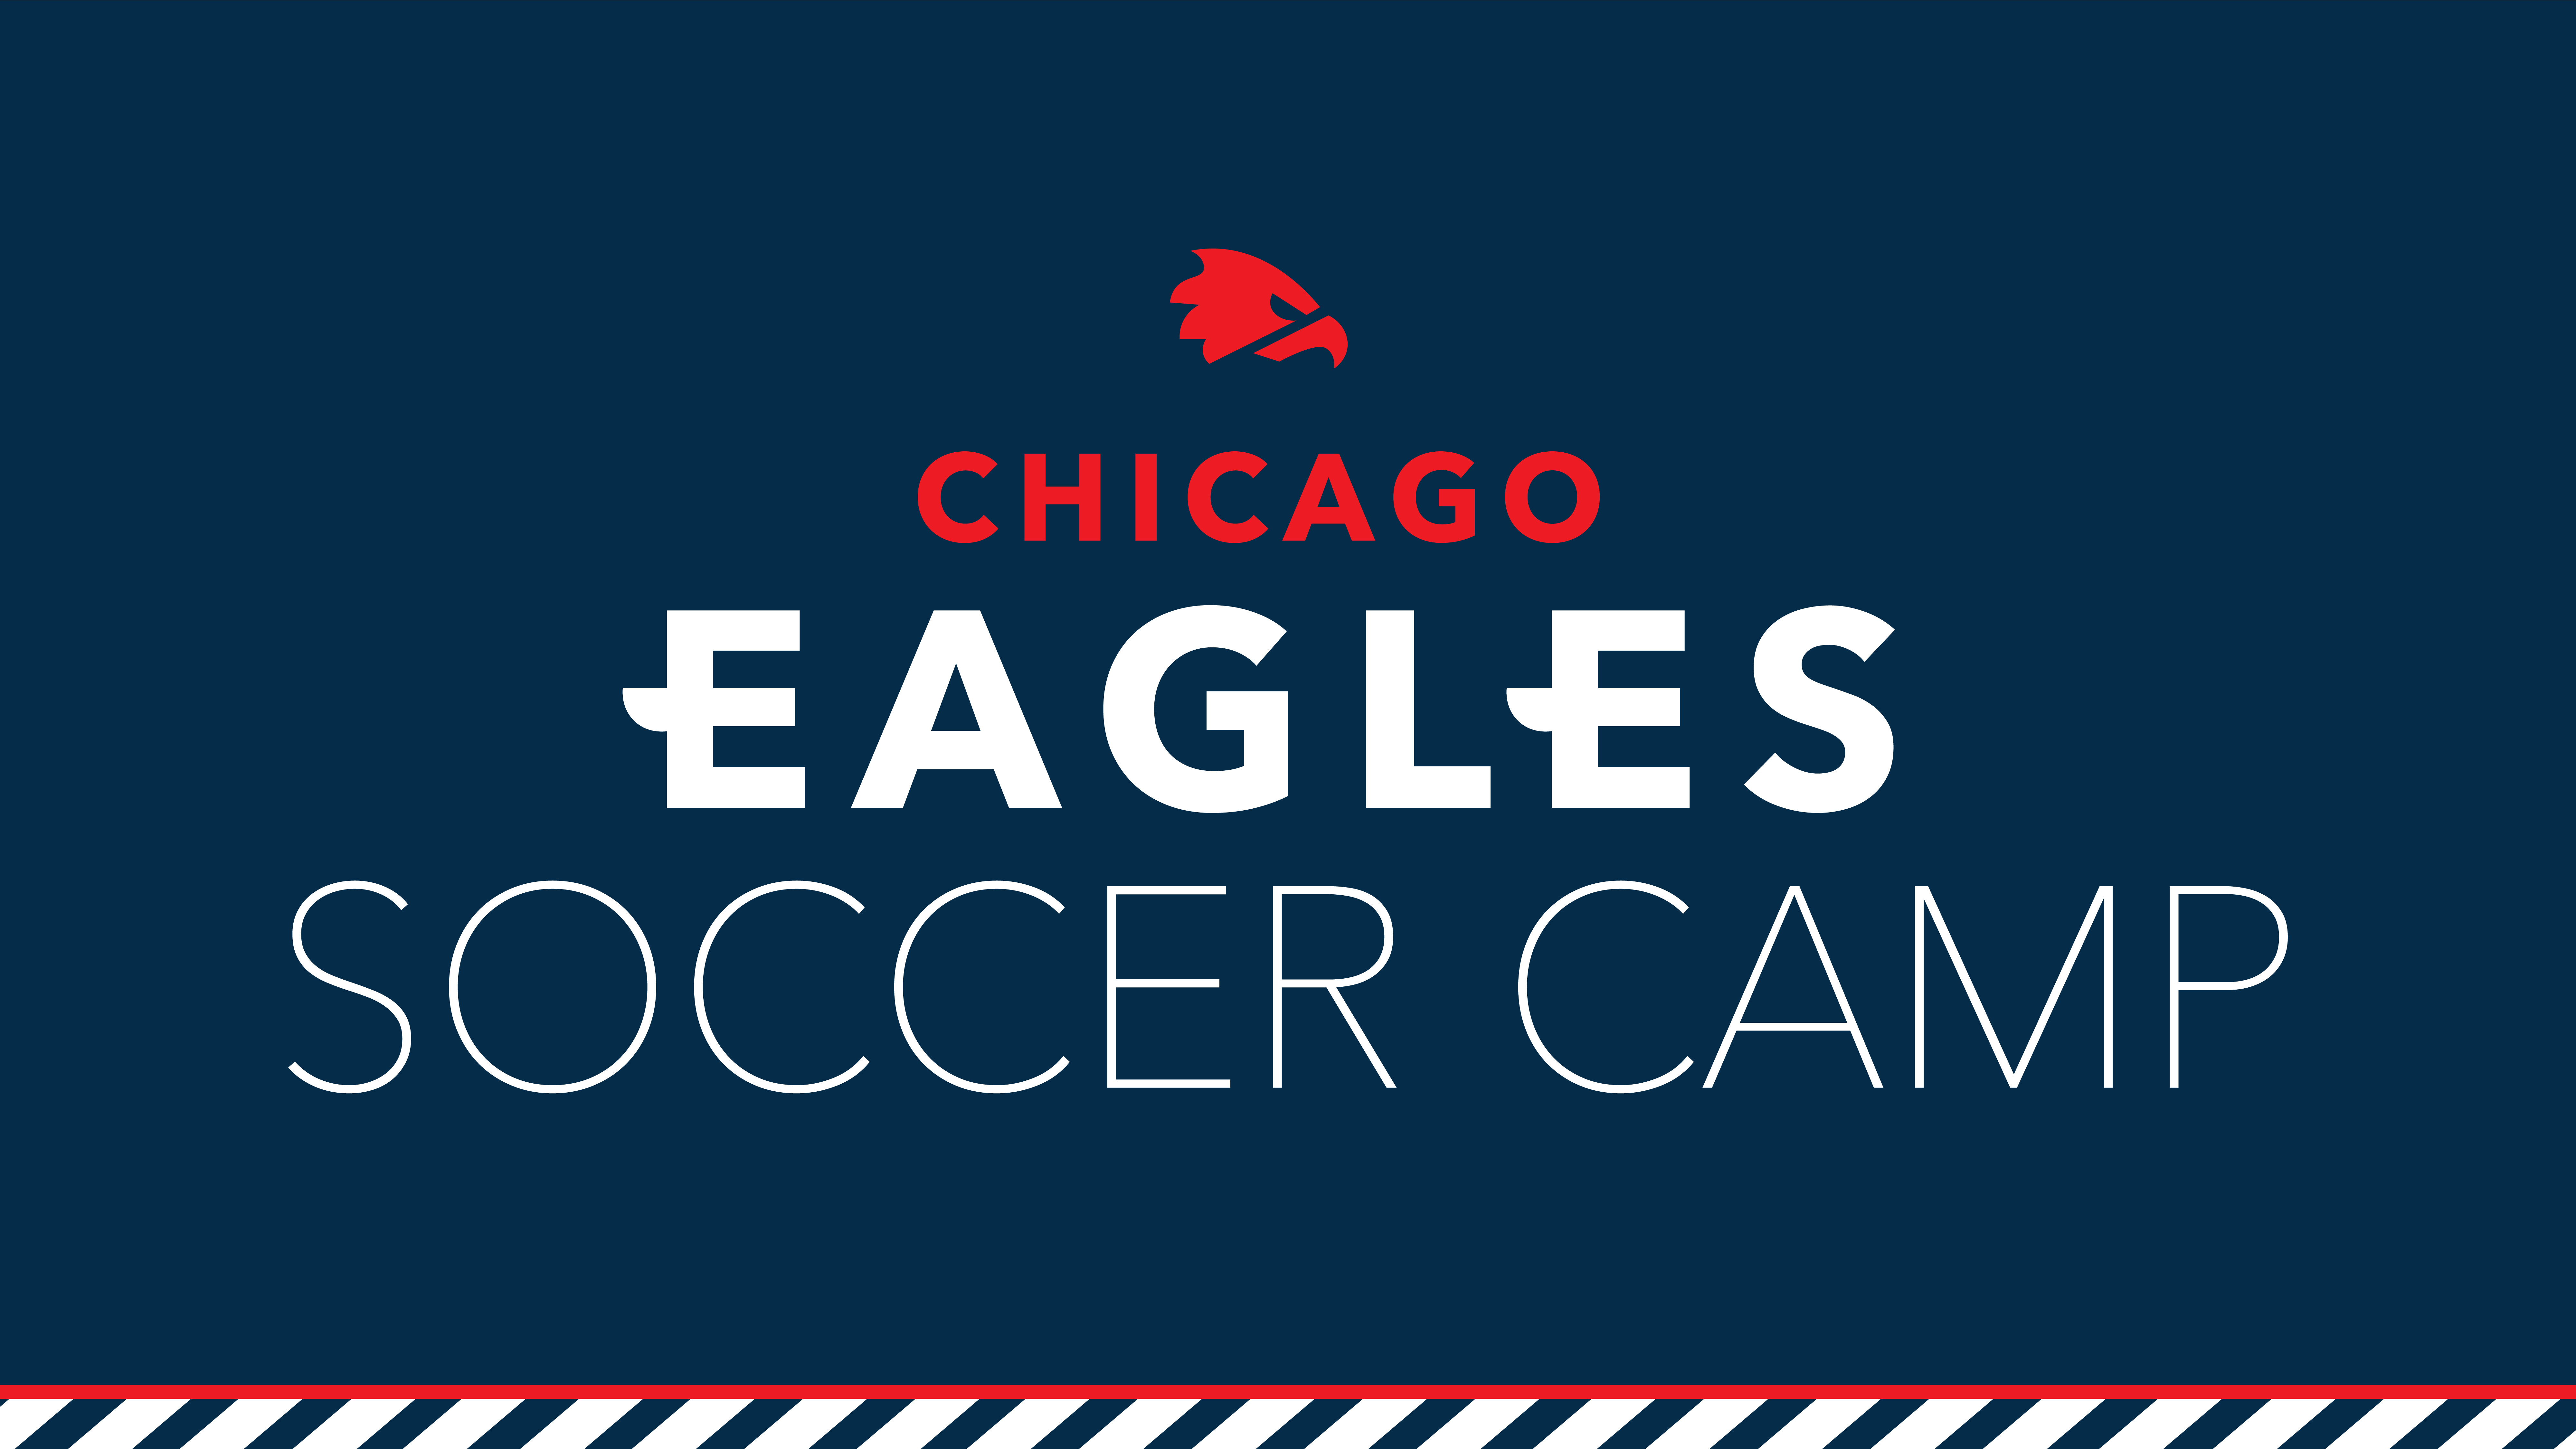 Chicago Eagles Soccer Camp